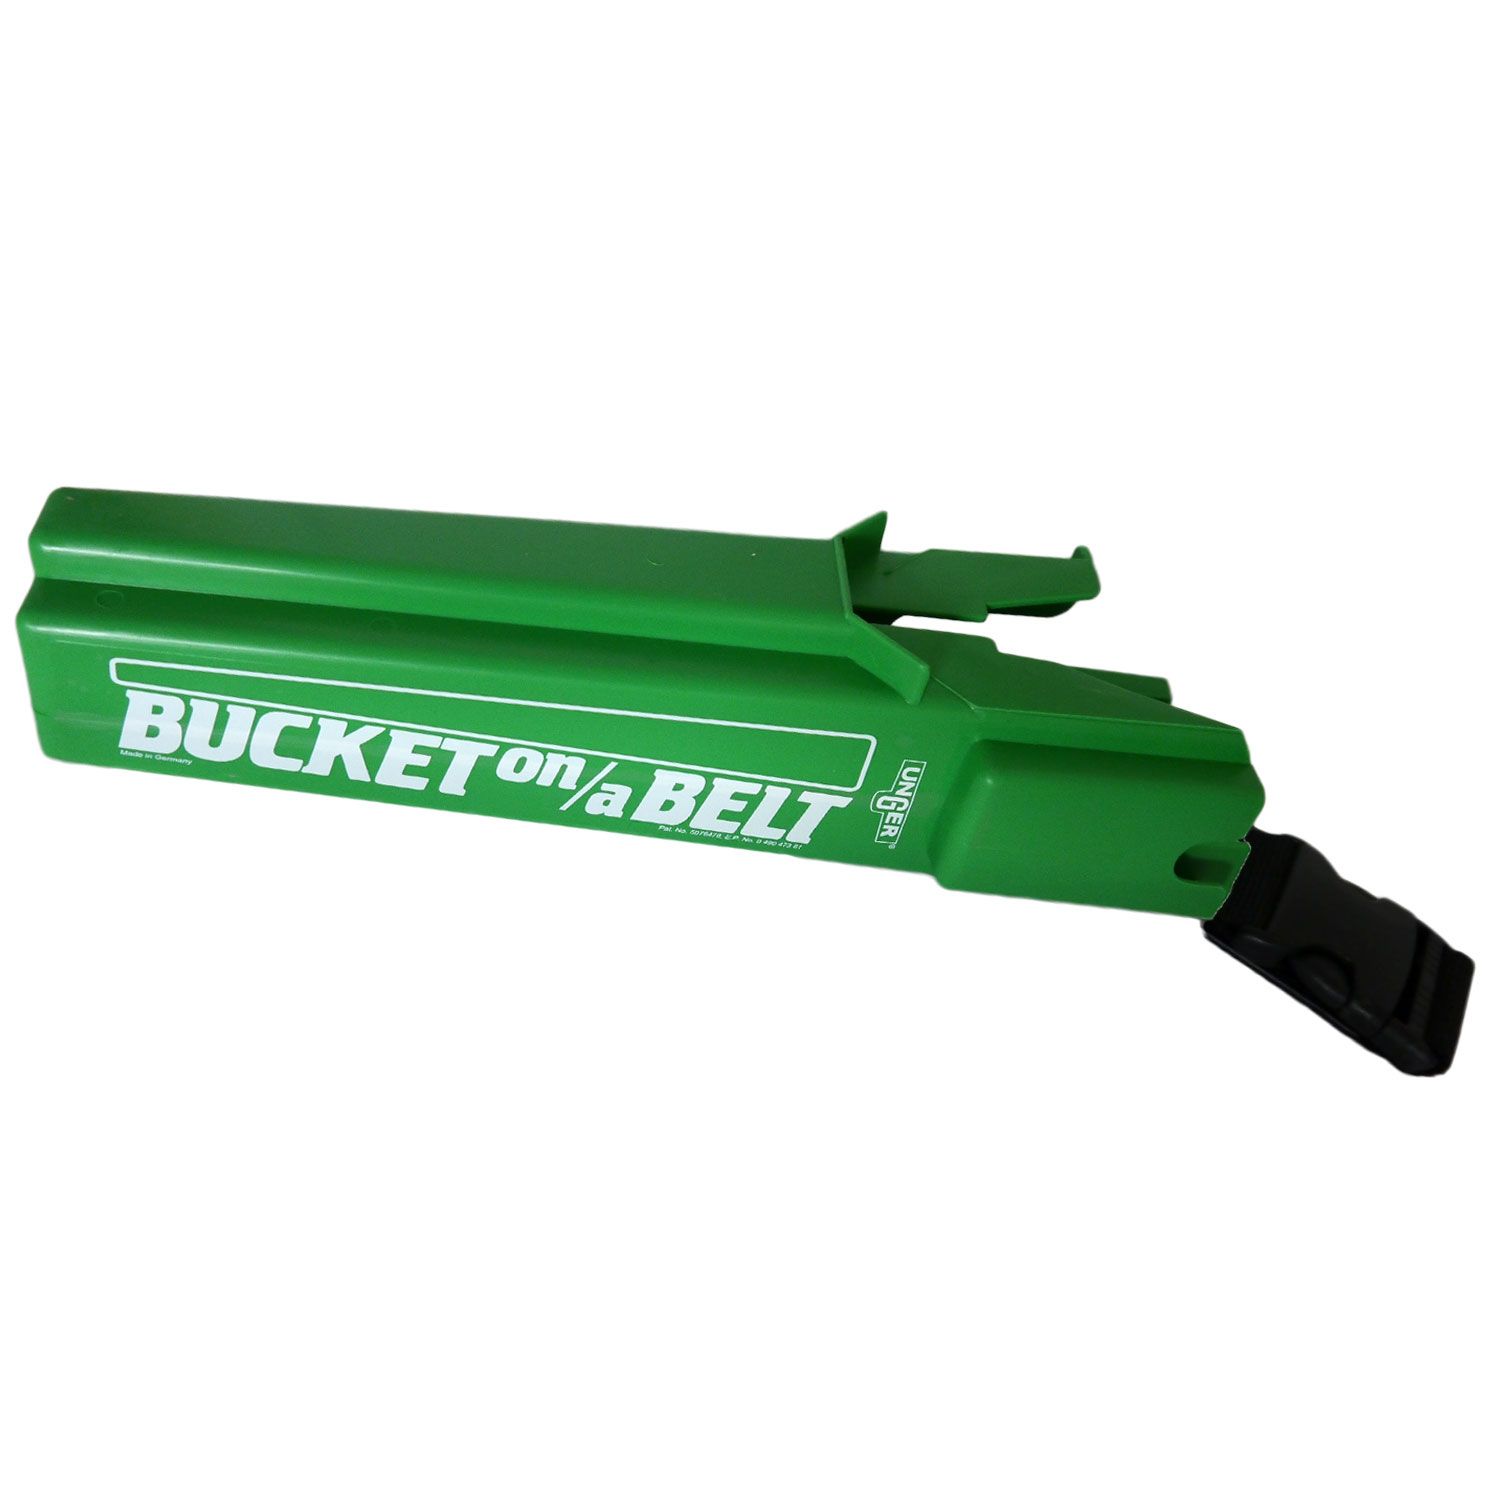 Unger Bucket On A Belt BB020 Köcher Classic grün Werkzeughalter bei Riemax